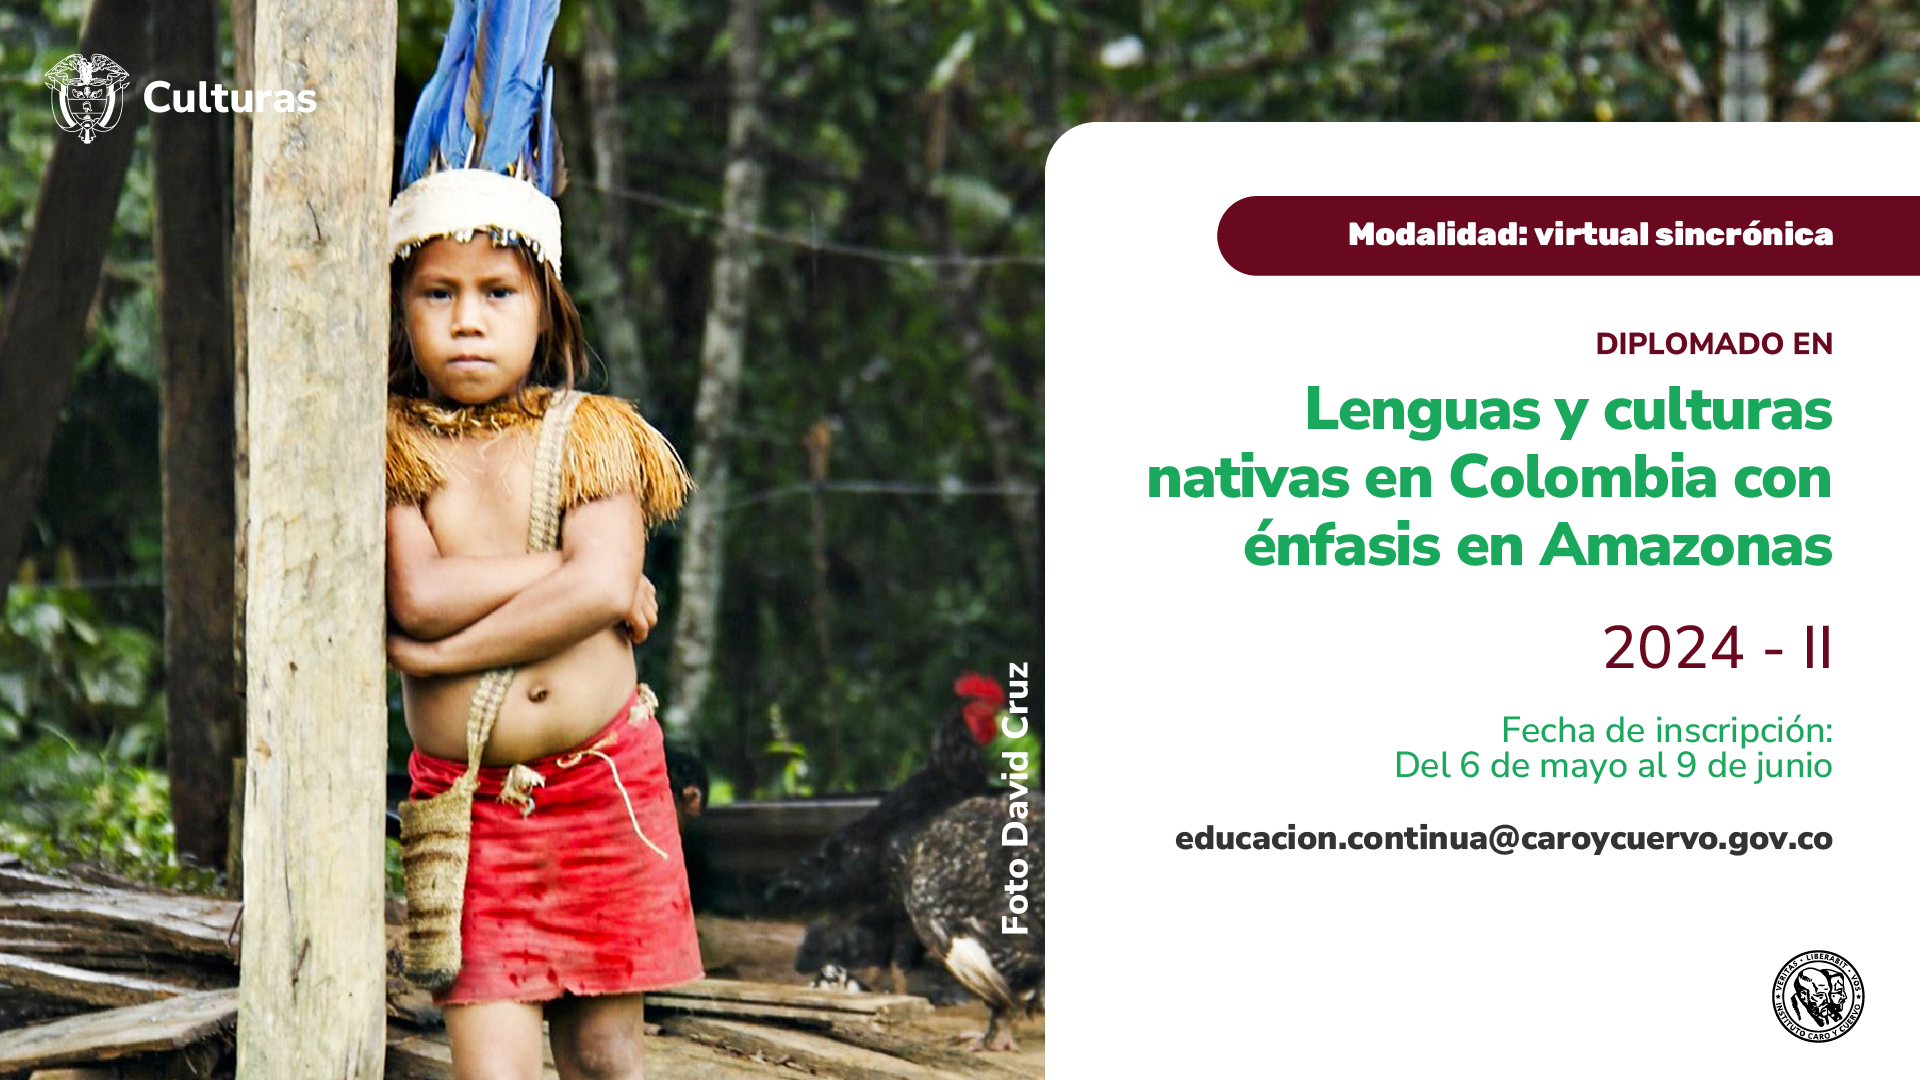 Diseño gráfico que provee información sobre la apertura de inscripciones al diplomado en Lenguas y culturas nativas en Colombia con énfasis en Amazonas - semestre II.